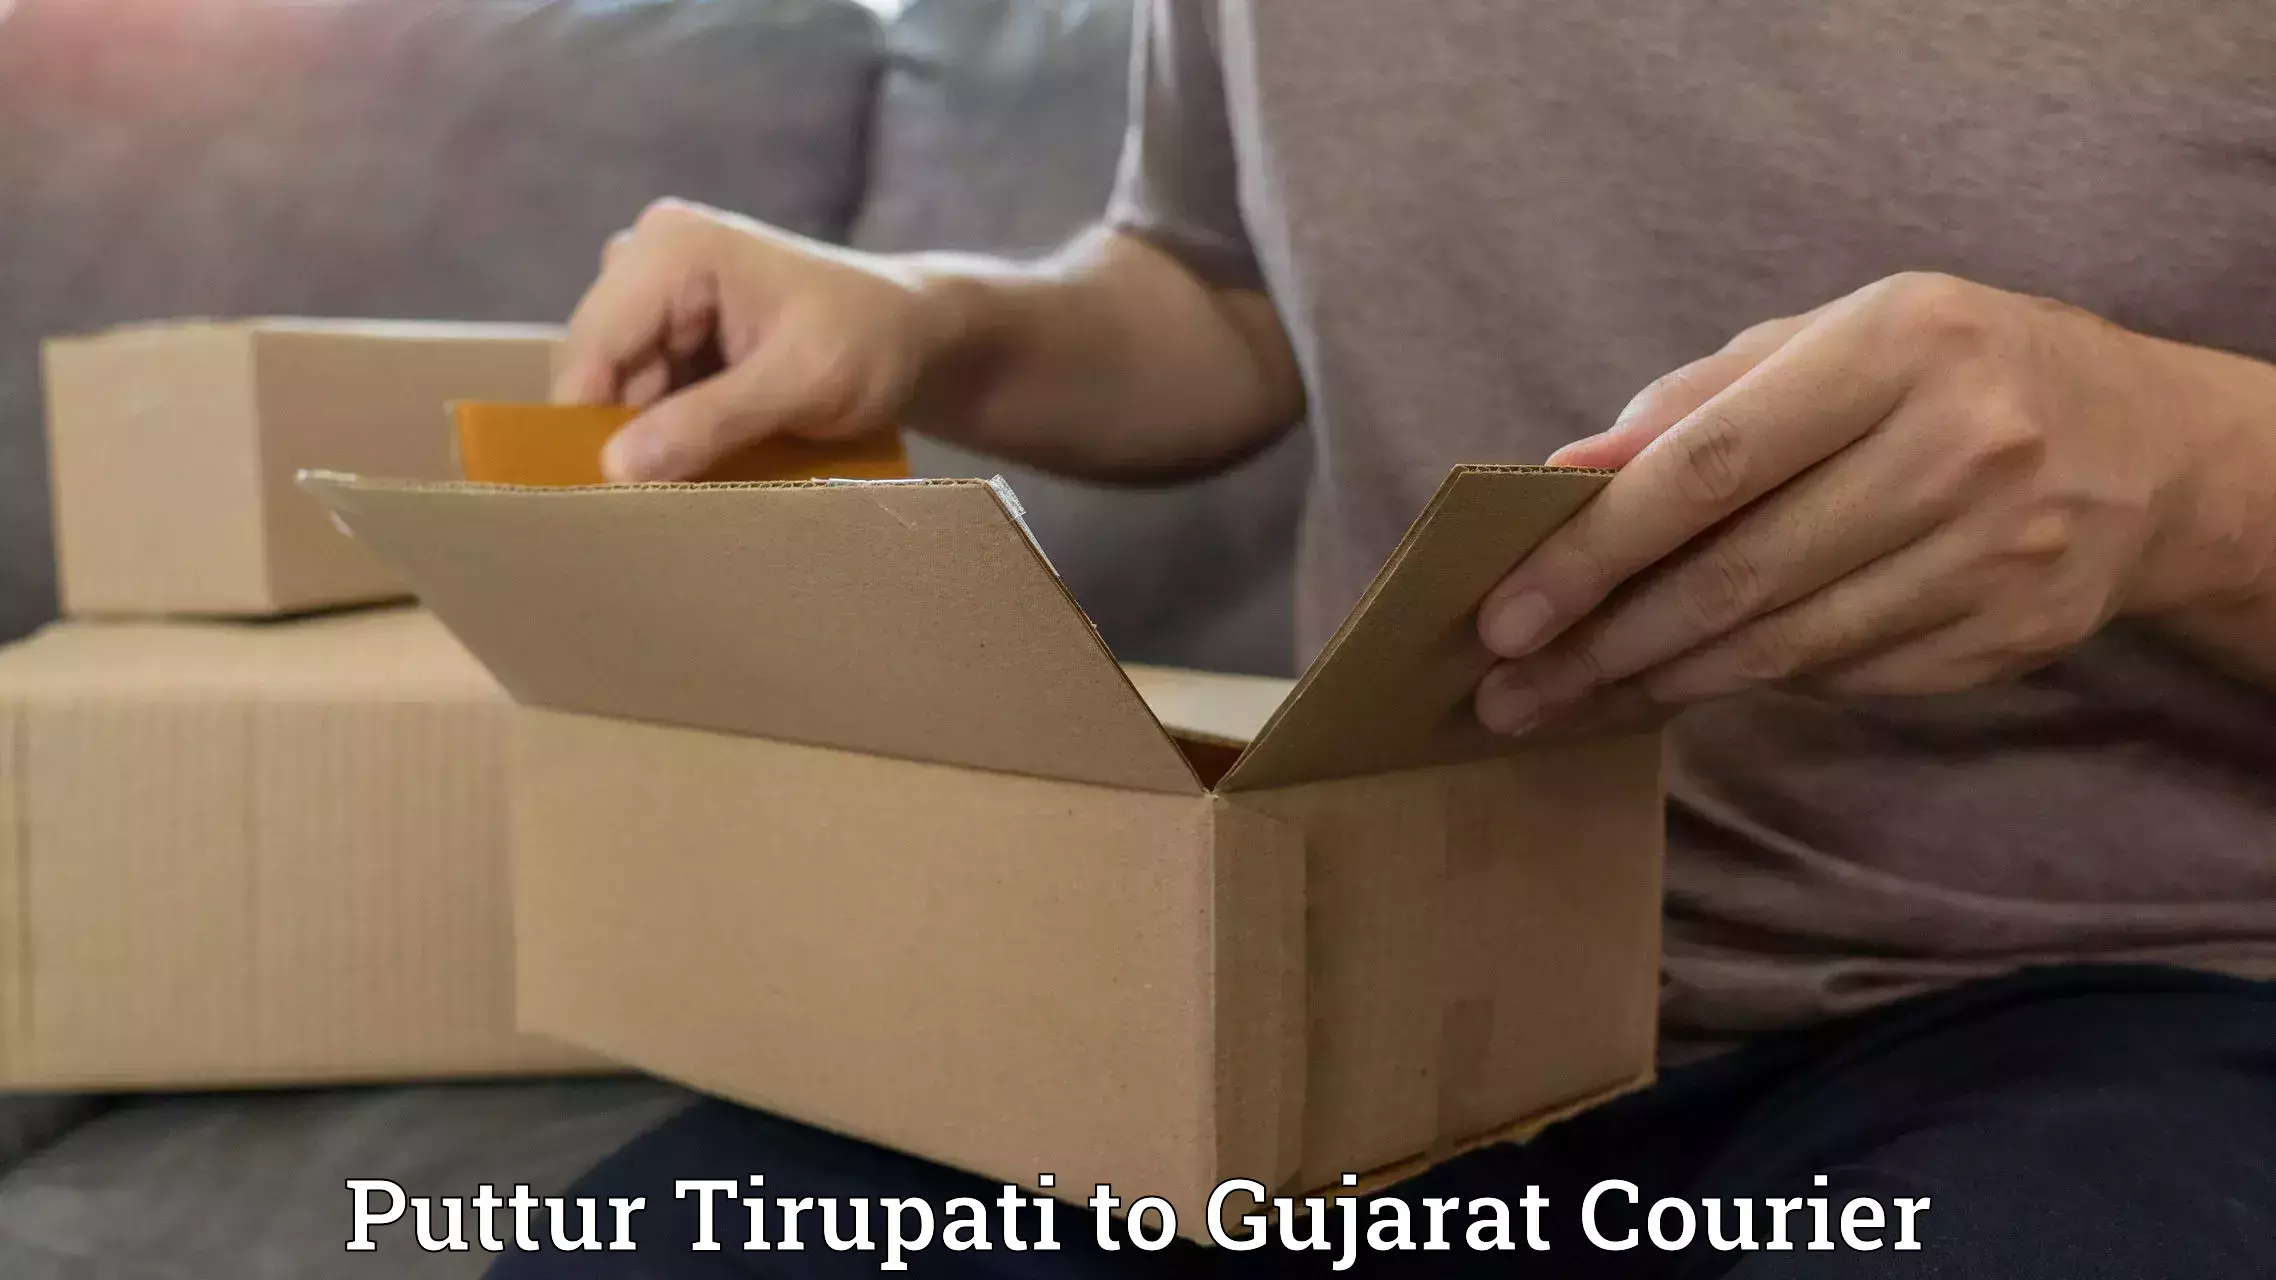 Courier service comparison Puttur Tirupati to Dayapar